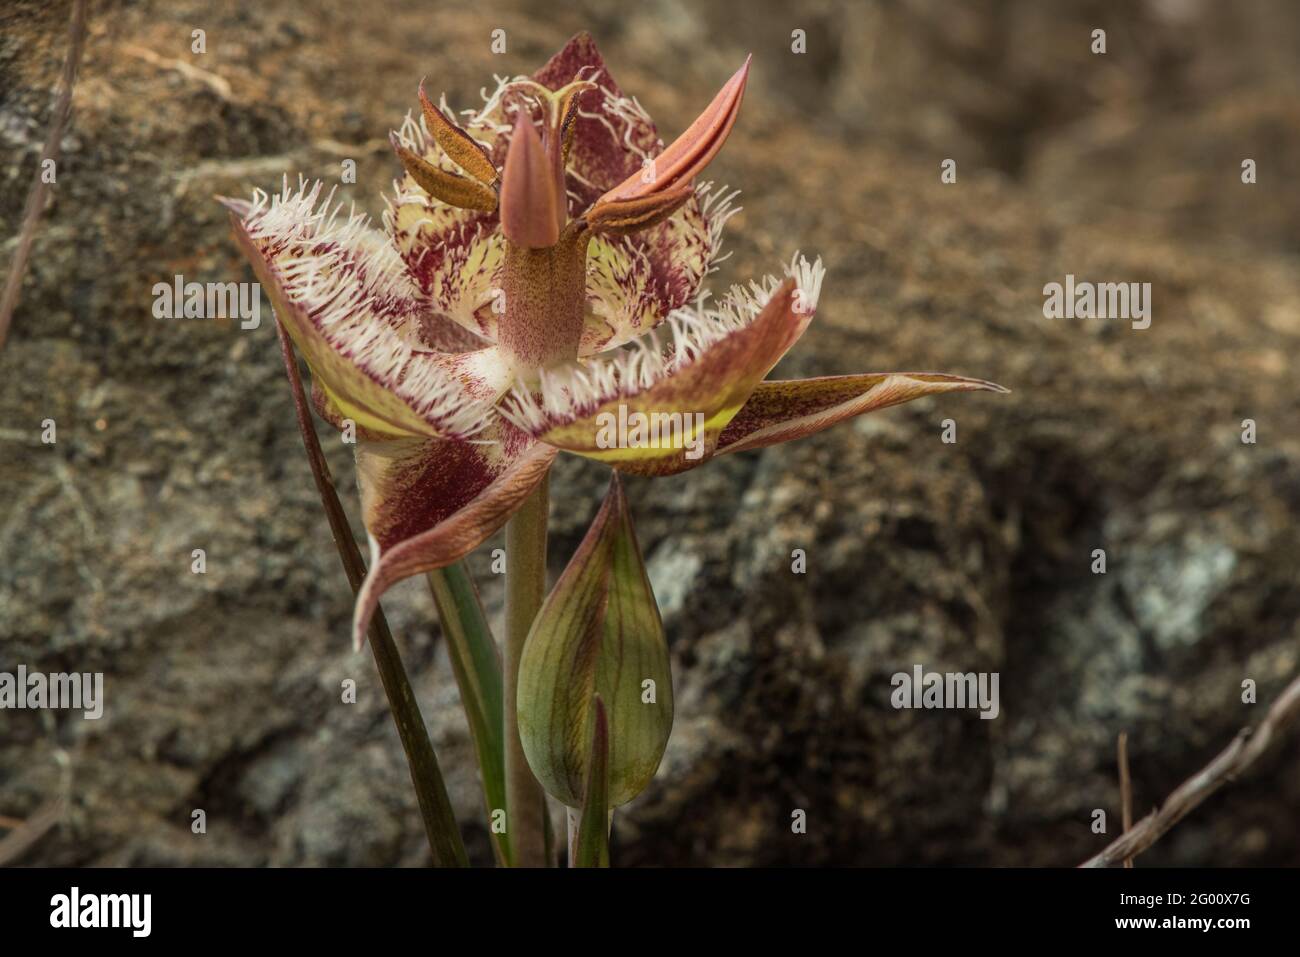 Tiburon Mariposa Lily (Calochortus tiburonensis) a rare plant endemic to Ring Mountain preserve, in the San Francsisco Bay area of California. Stock Photo